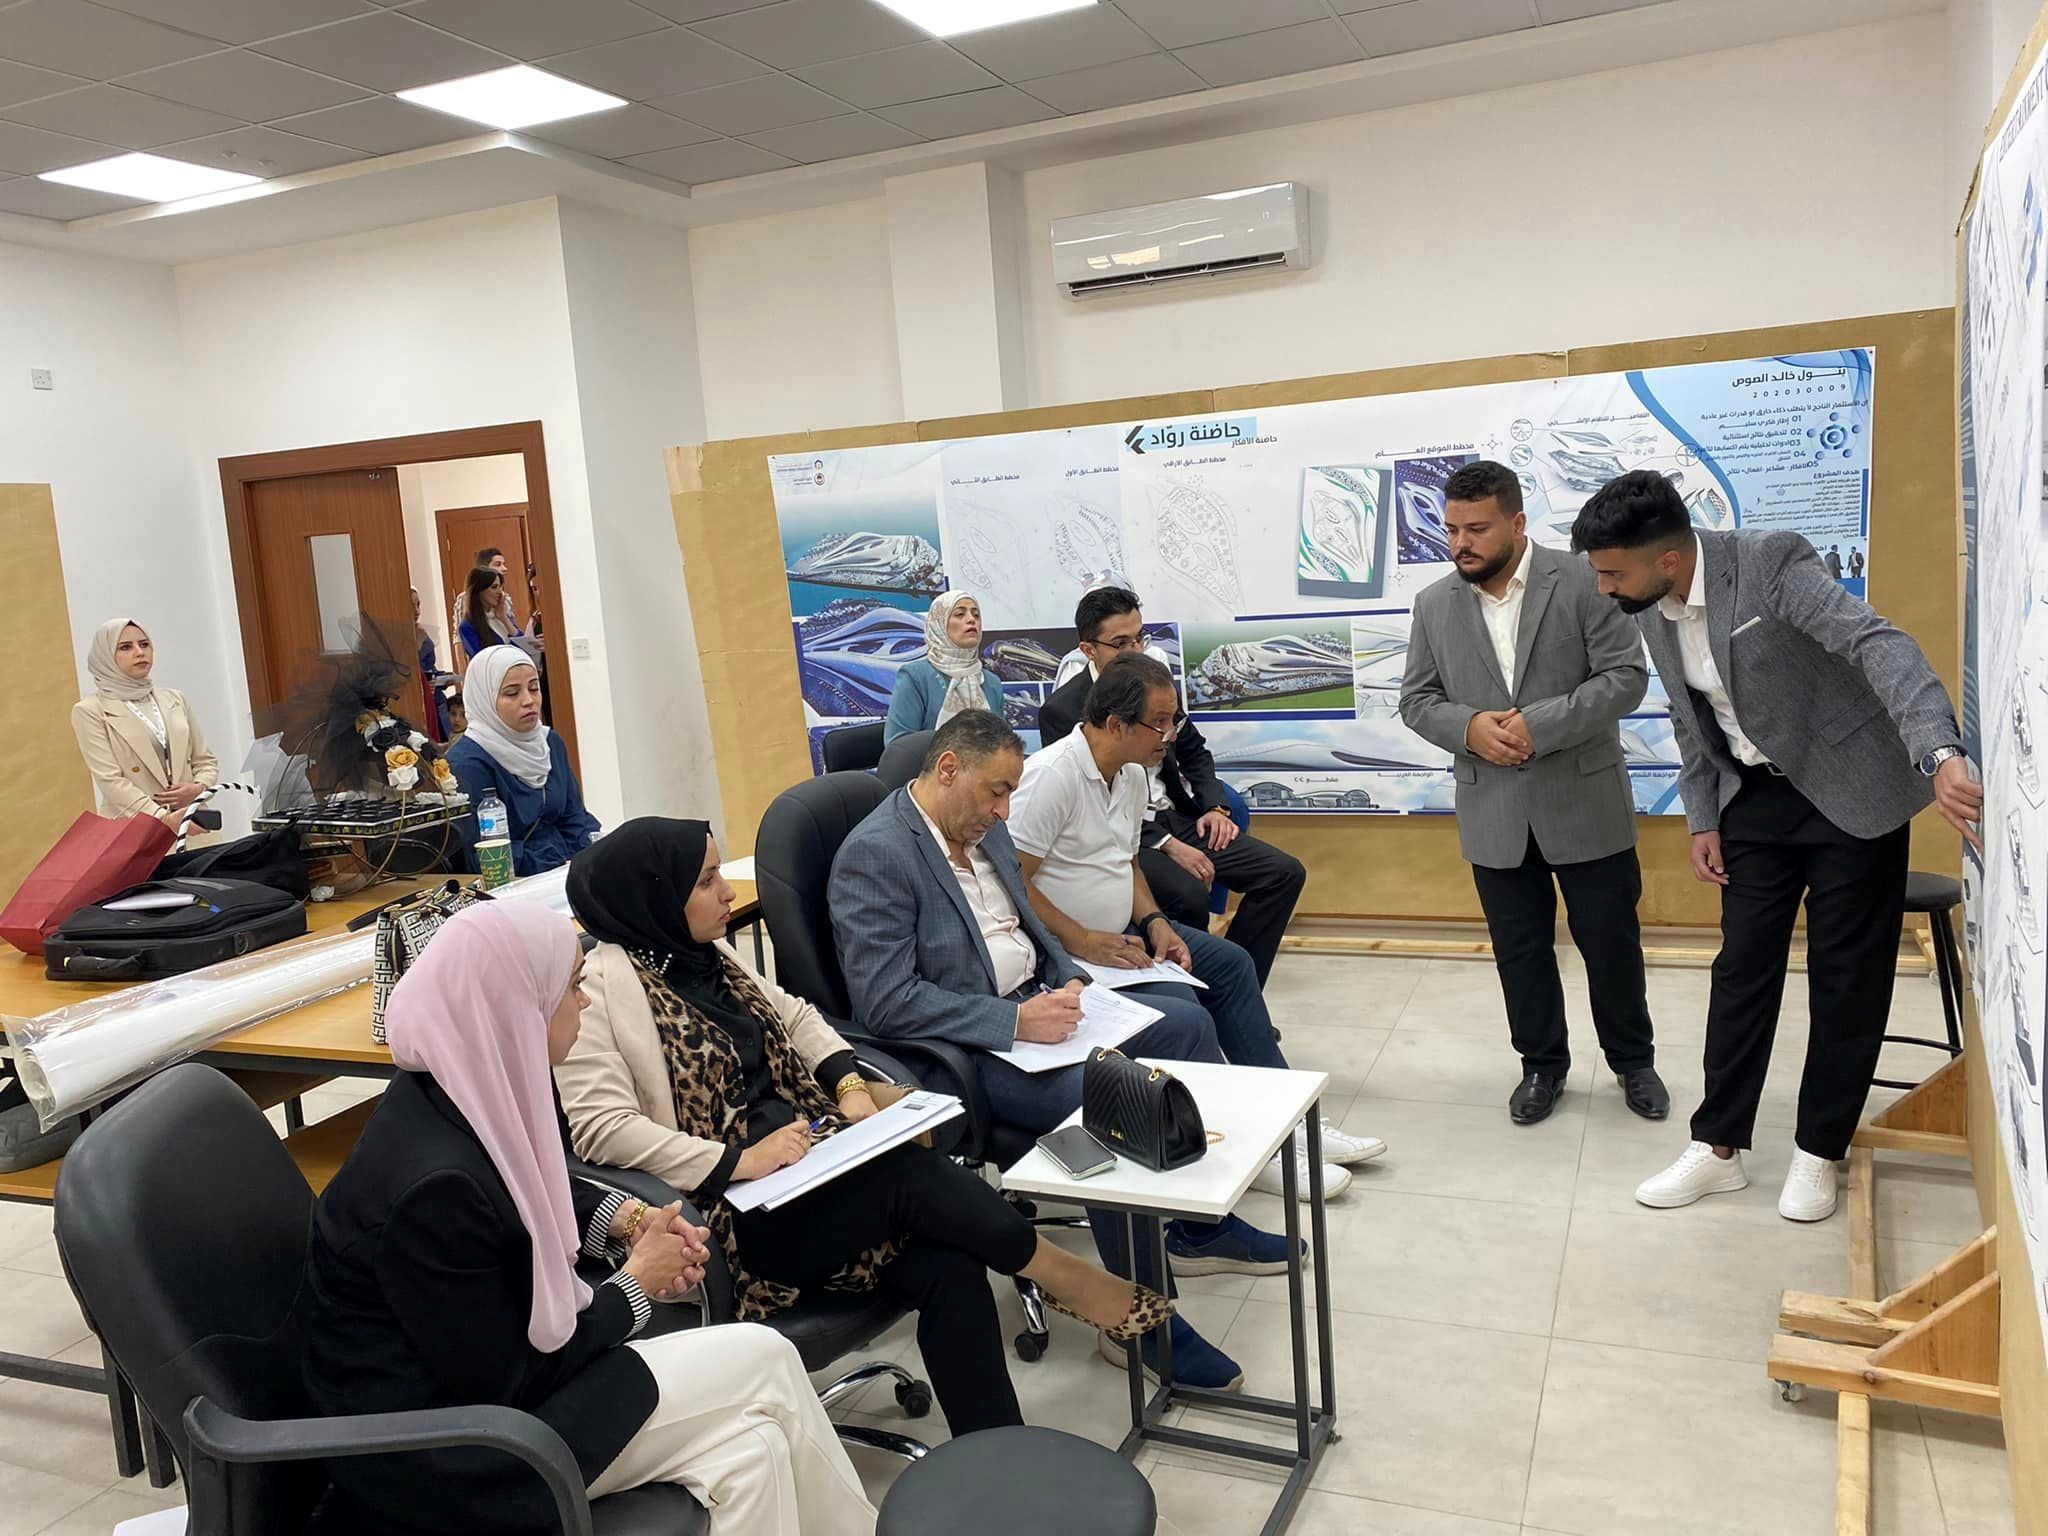 مشاريع تخرج بأفكار ريادية لطلبة هندسة العمارة في "عمان العربية"3